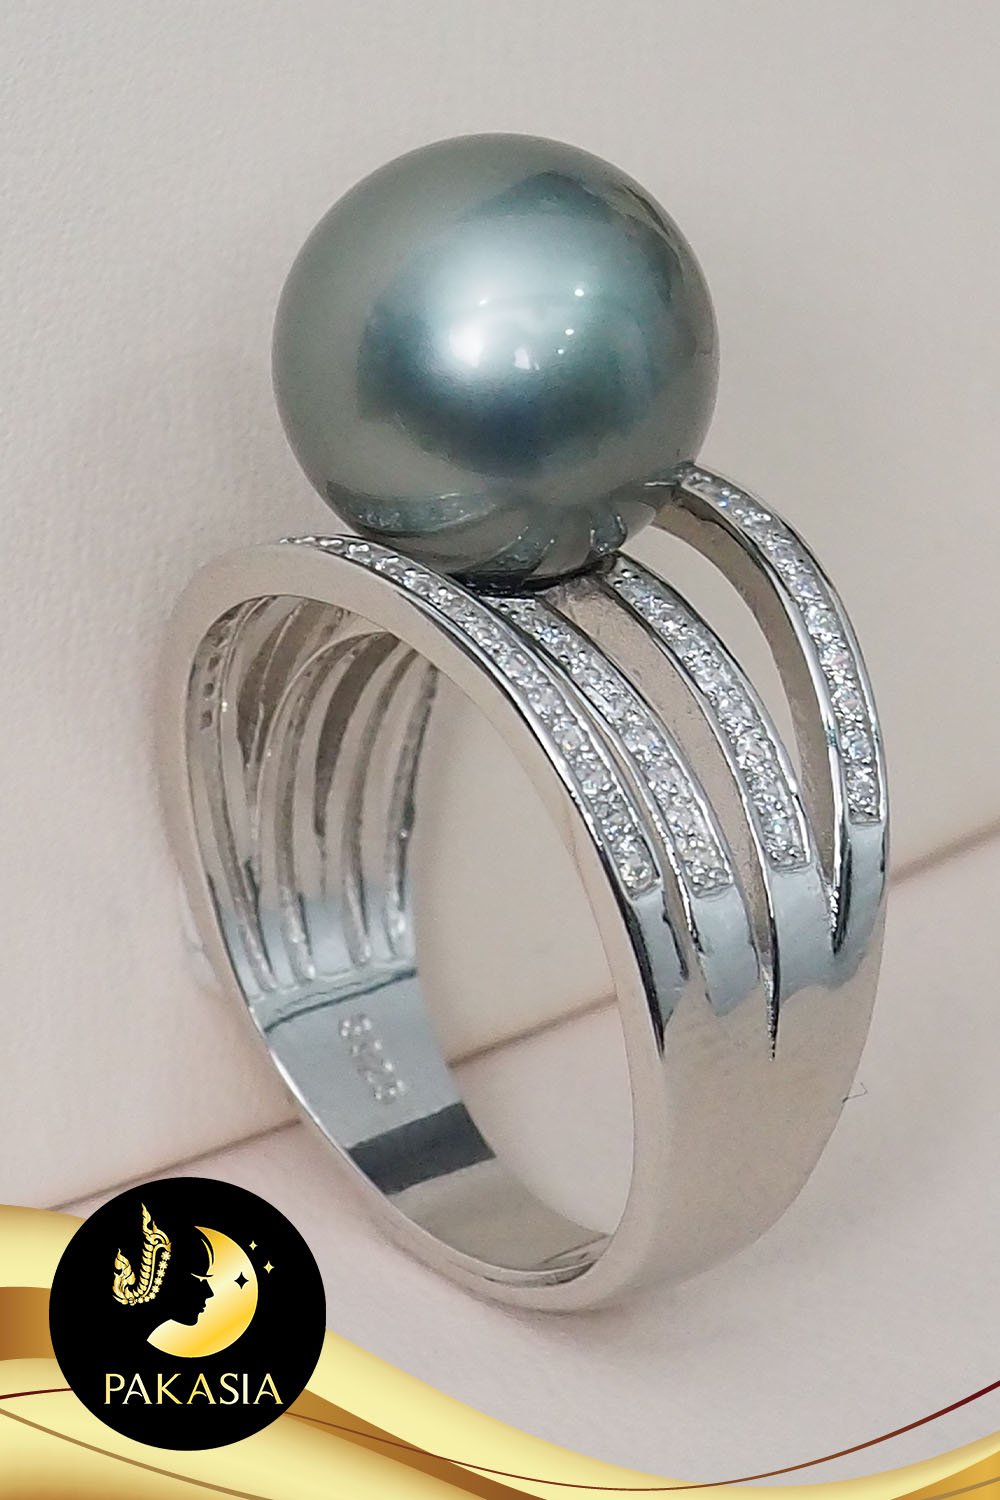 แหวนมุกตาฮิติสี่สายประดับเพชร cz มุกฮิติ ทรงกลม สีดำ เกรด AAA ขนาด 11-11.5 mm. ตัวเรือนเงินแท้ 92.5 ชุบทองคำขาวประดับเพชร cz / SN0150ZR688